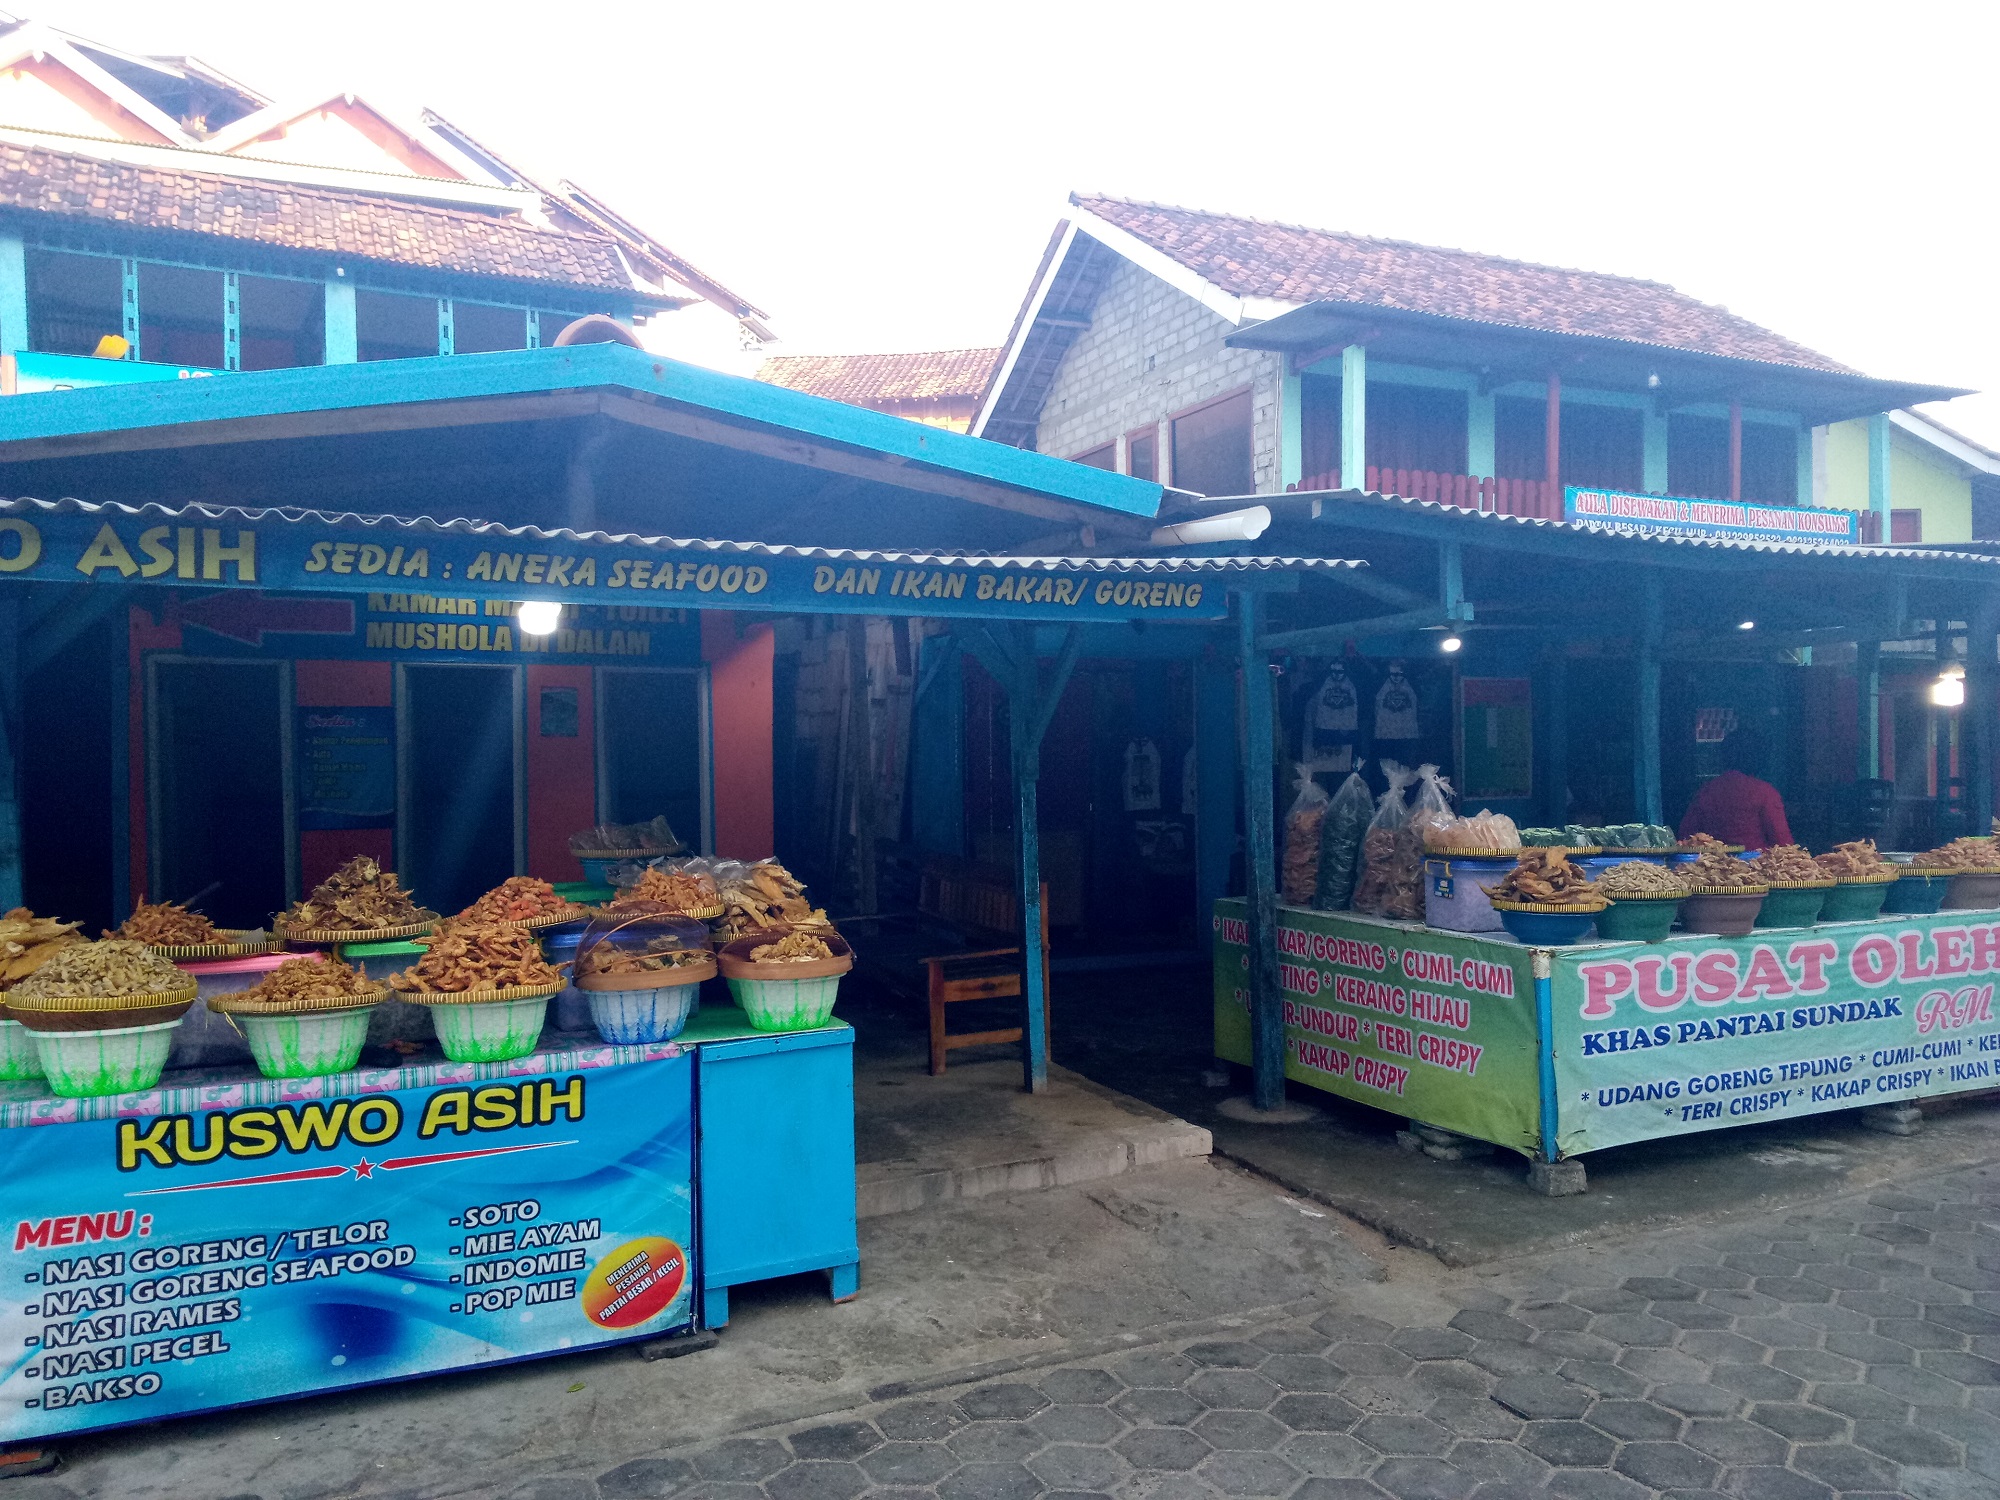 Pusat Kuliner Pantai Sundak